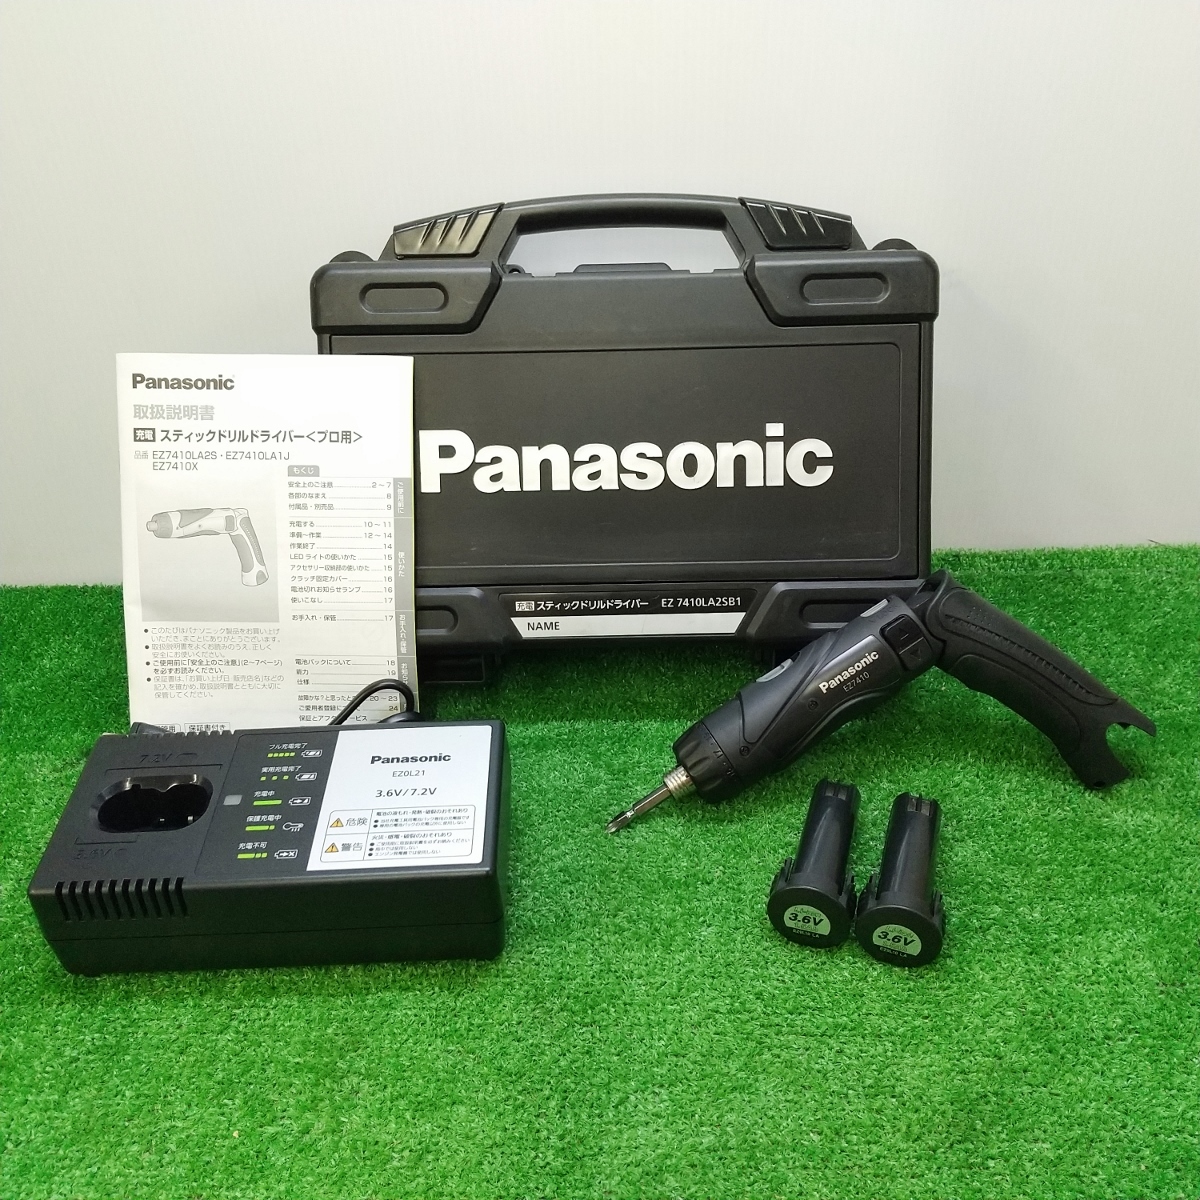 中古 美品 パナソニック Panasonic 3.6V 充電 スティックドリルドライバー 1.5Ah バッテリー 2個 充電器 付 EZ7410LA2SB1